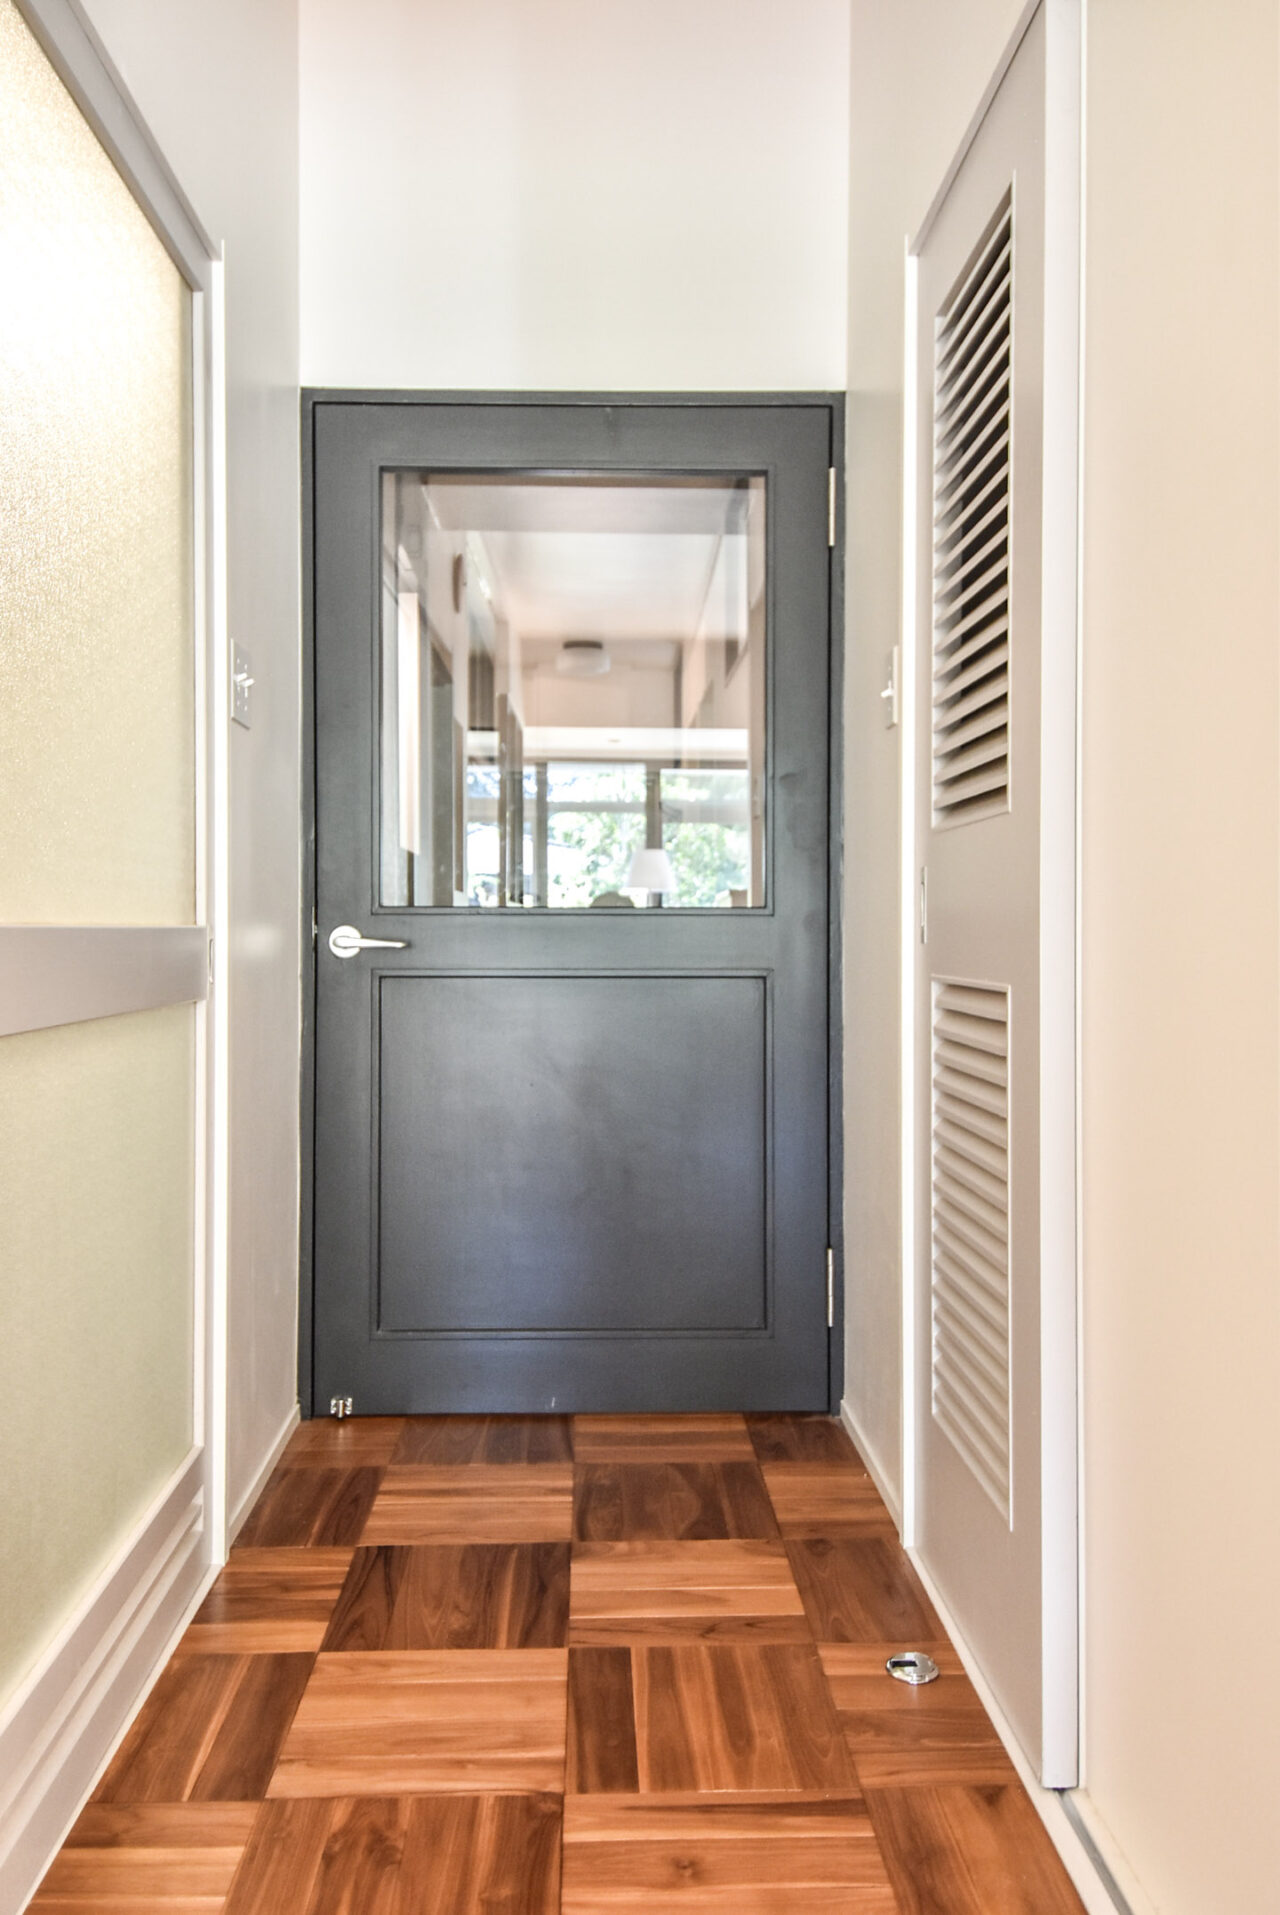 明るい室内の木製の床とグレーのドアが特徴的な空間です。ドアにはガラス窓があり、部屋の中が見えます。